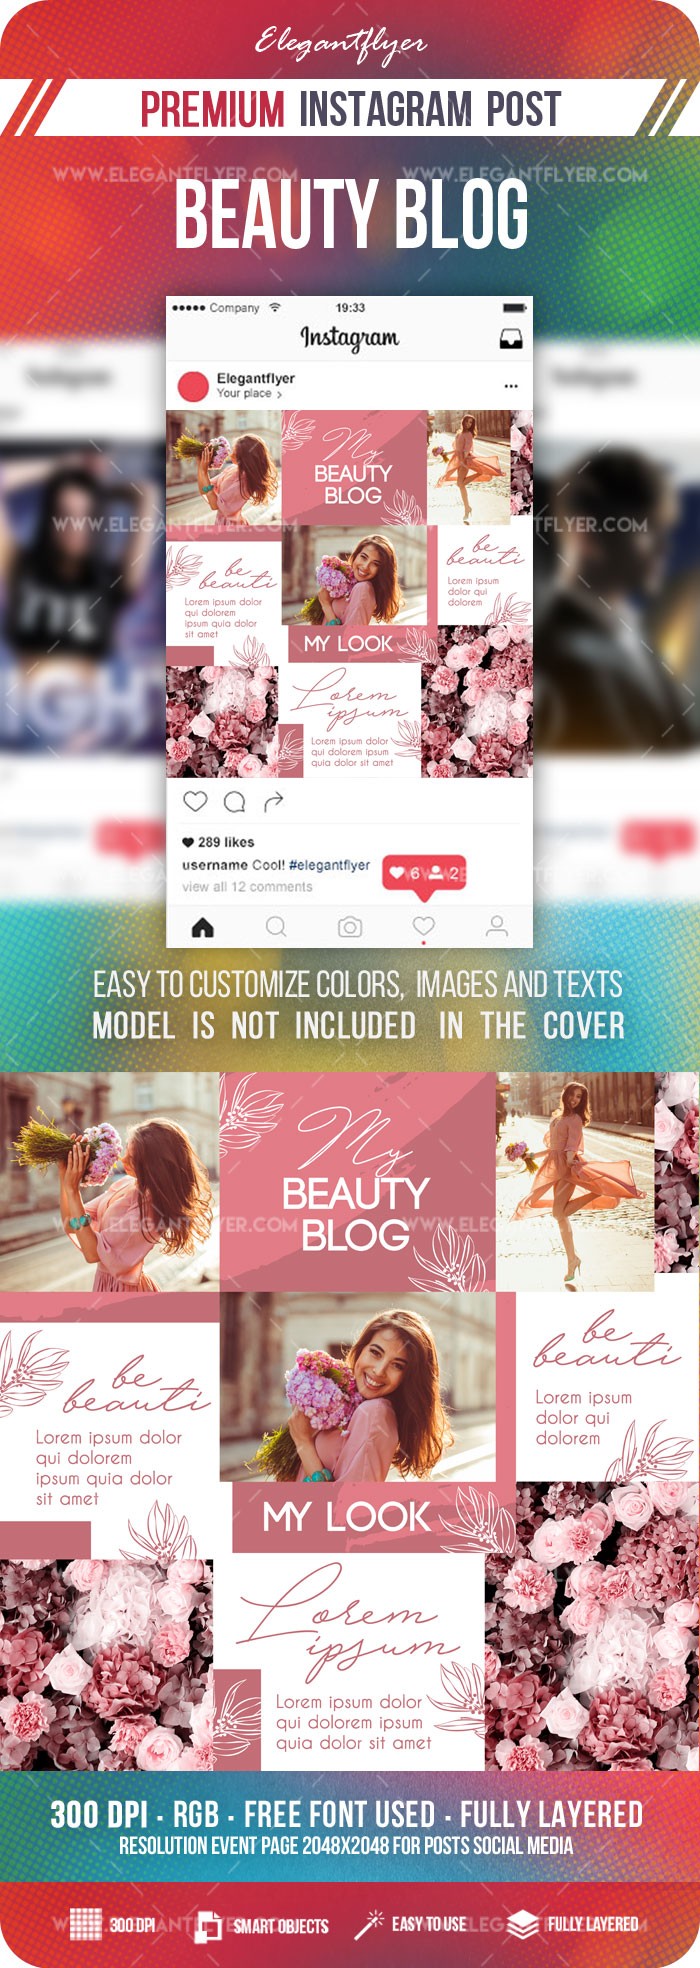 Schönheits-Blog Instagram by ElegantFlyer